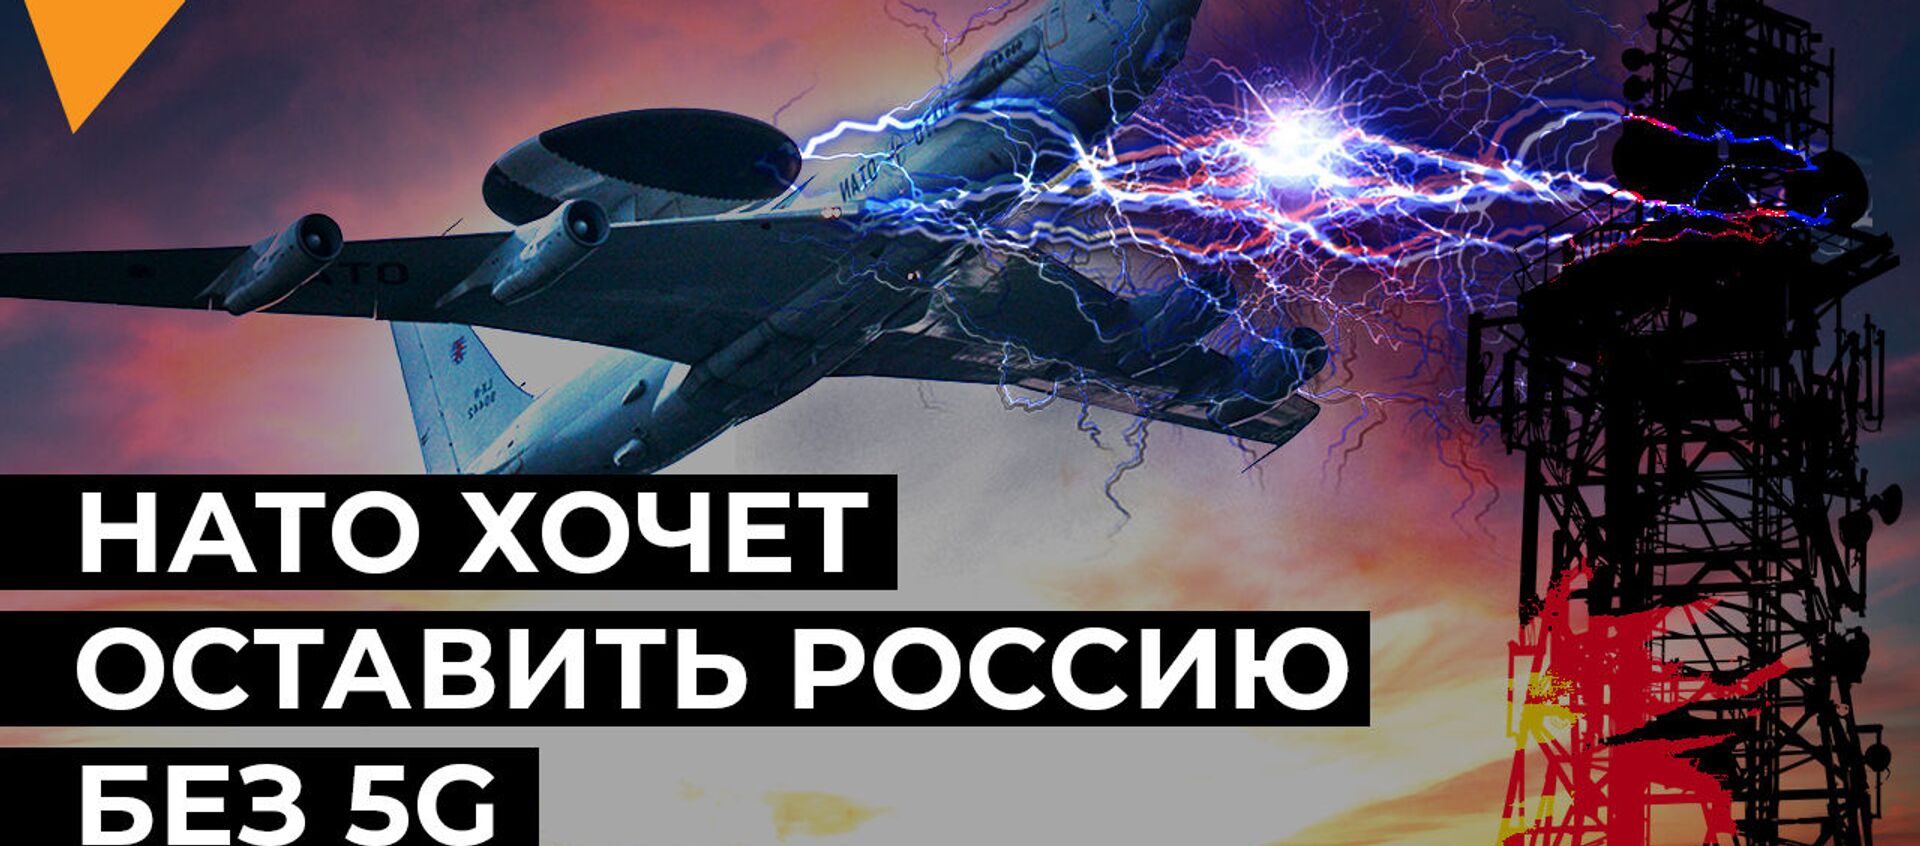 НАТО угрожает запуску 5G в России - видео - Sputnik Қазақстан, 1920, 12.02.2021